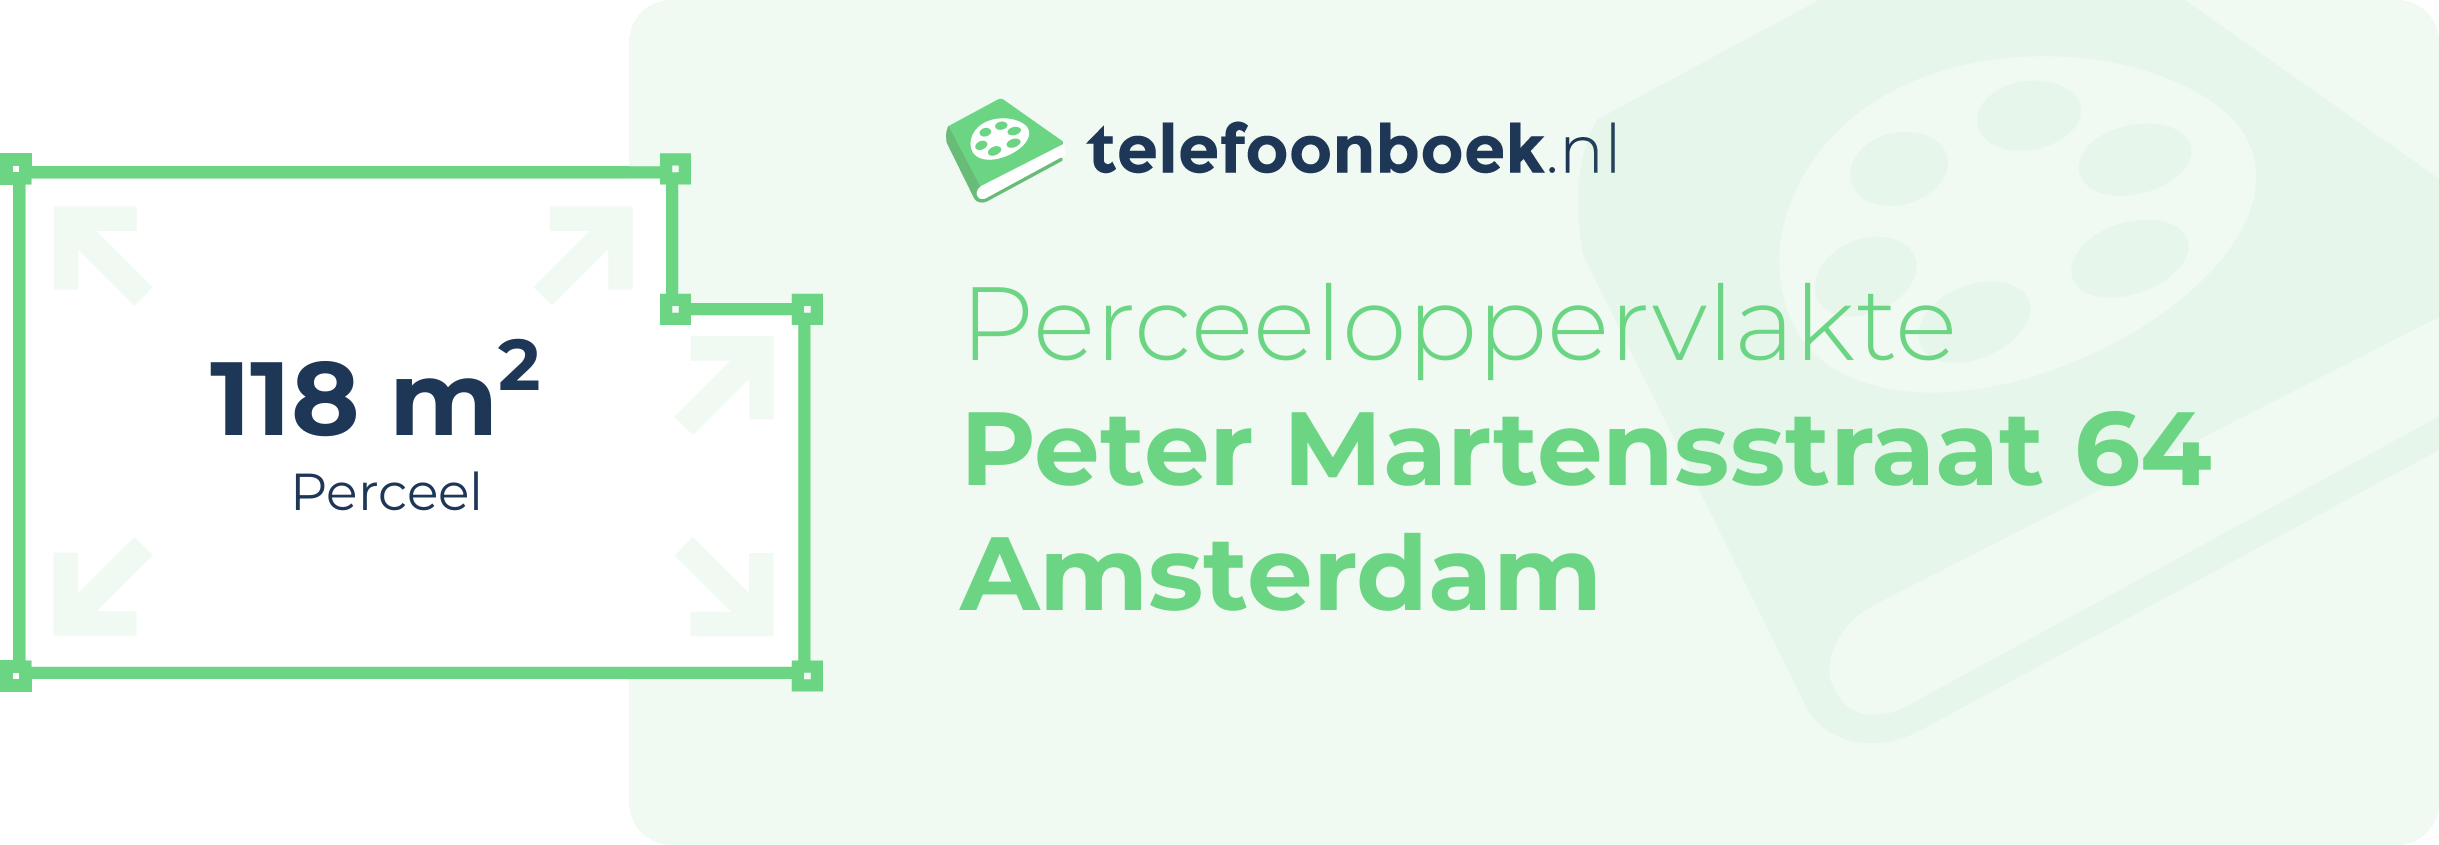 Perceeloppervlakte Peter Martensstraat 64 Amsterdam